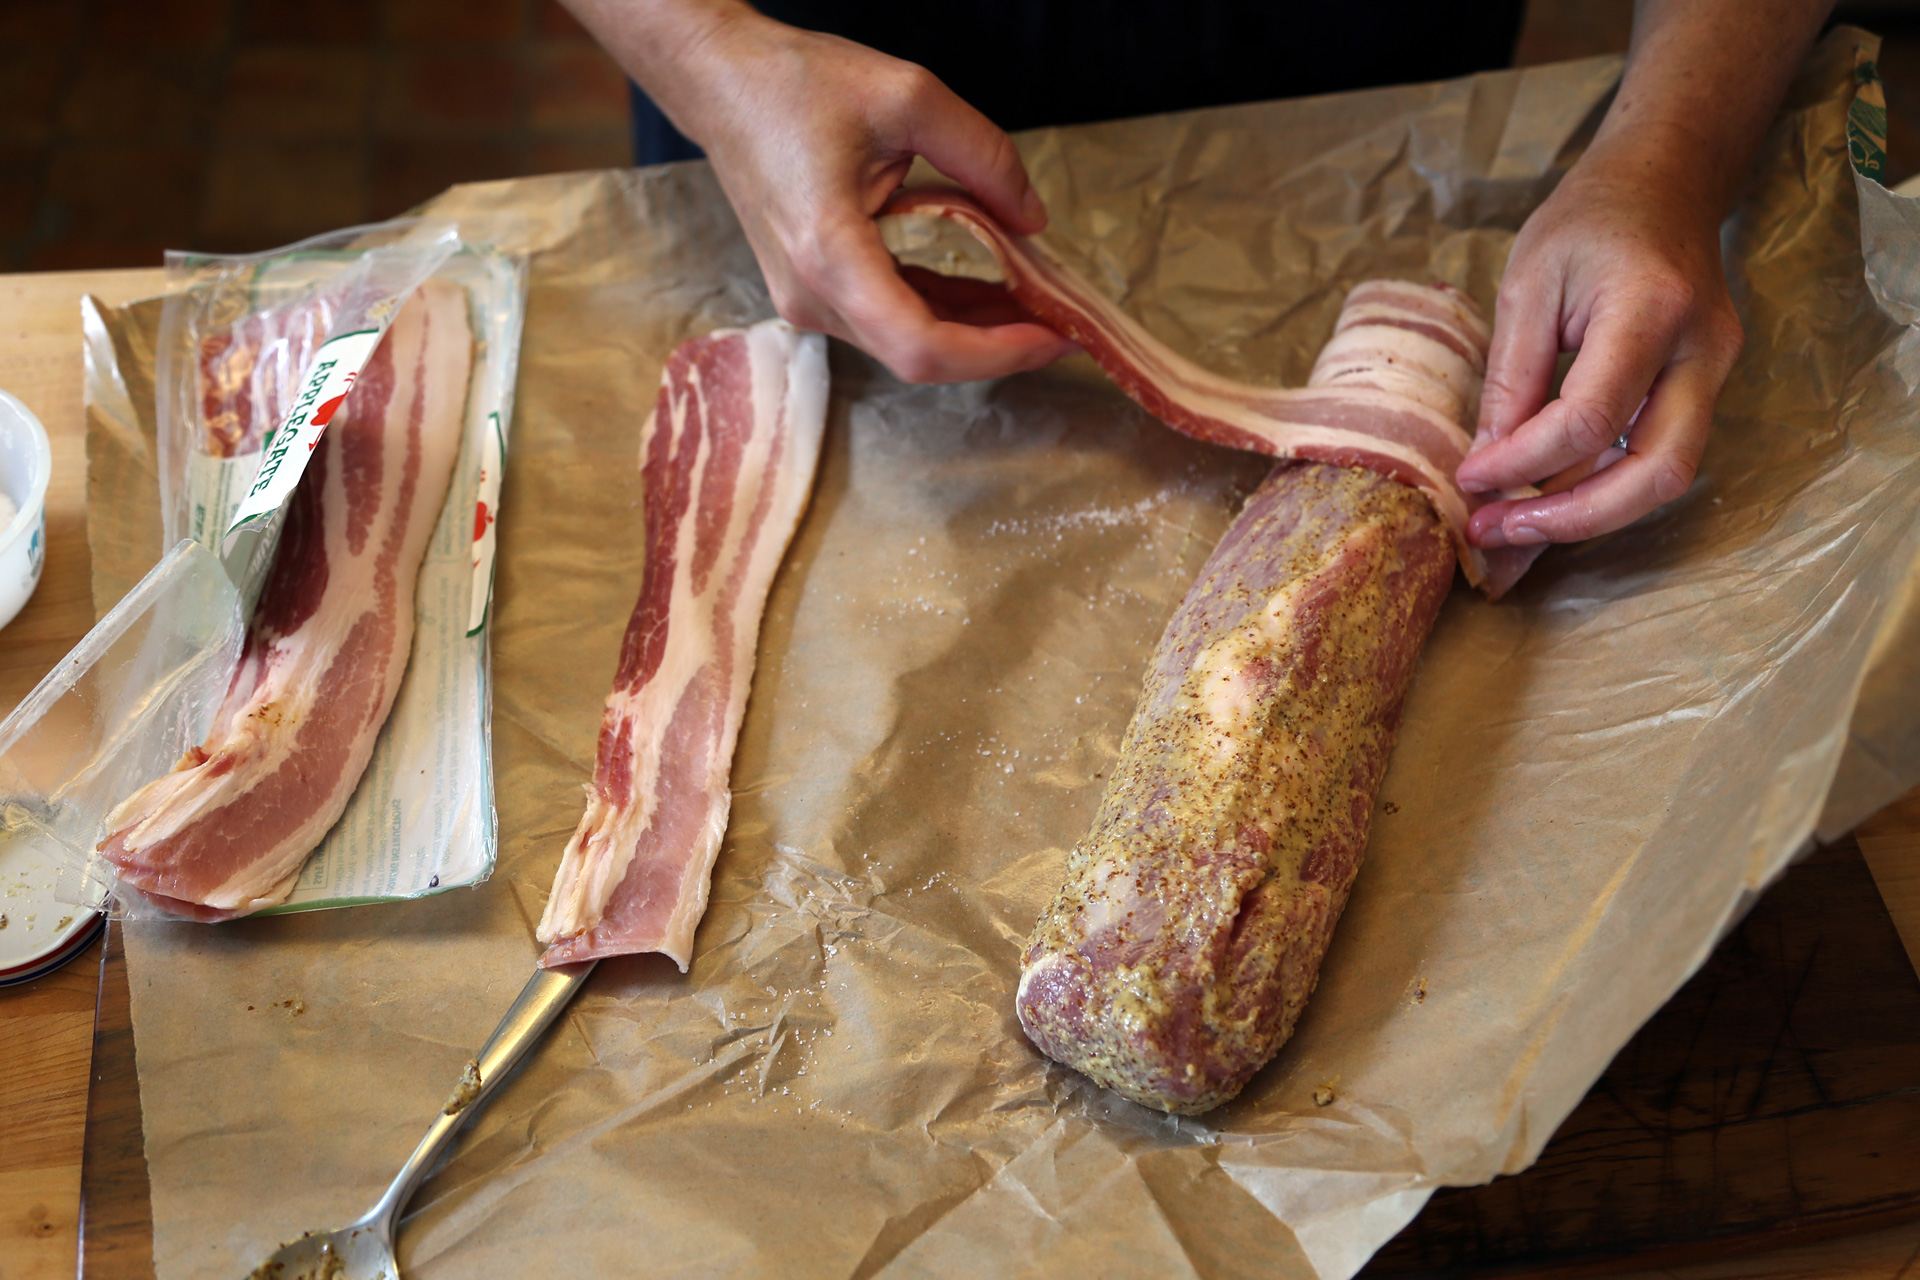 Wrap the bacon around the tenderloin.